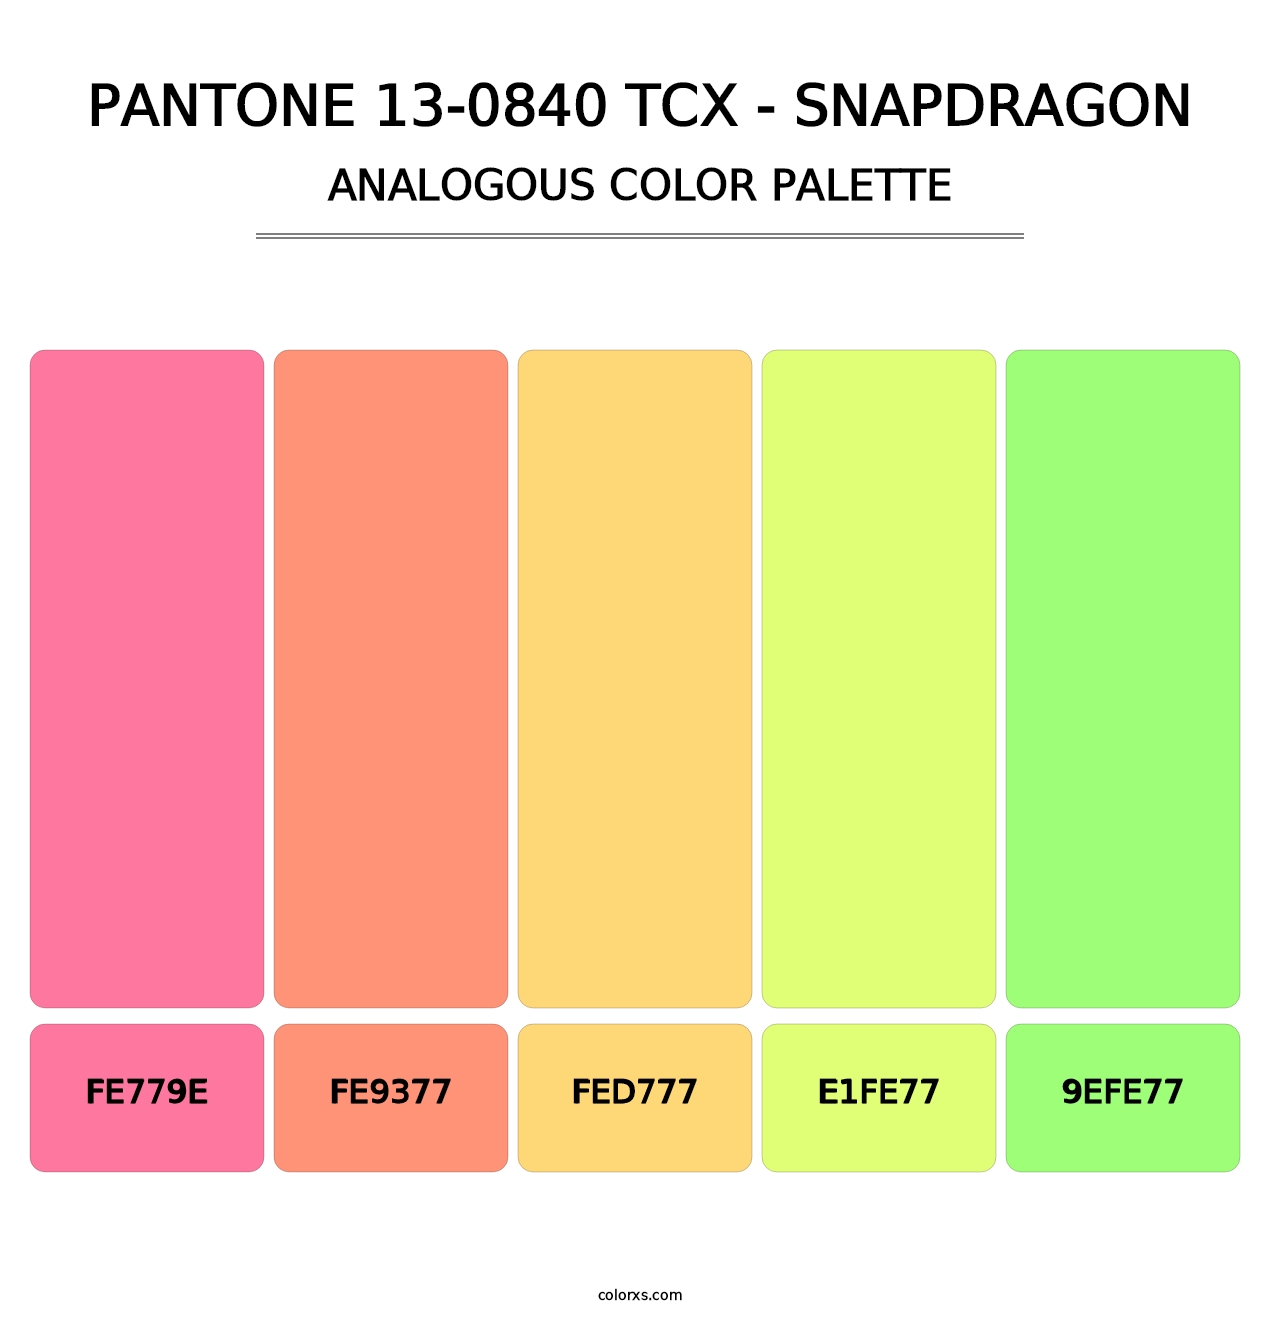 PANTONE 13-0840 TCX - Snapdragon - Analogous Color Palette